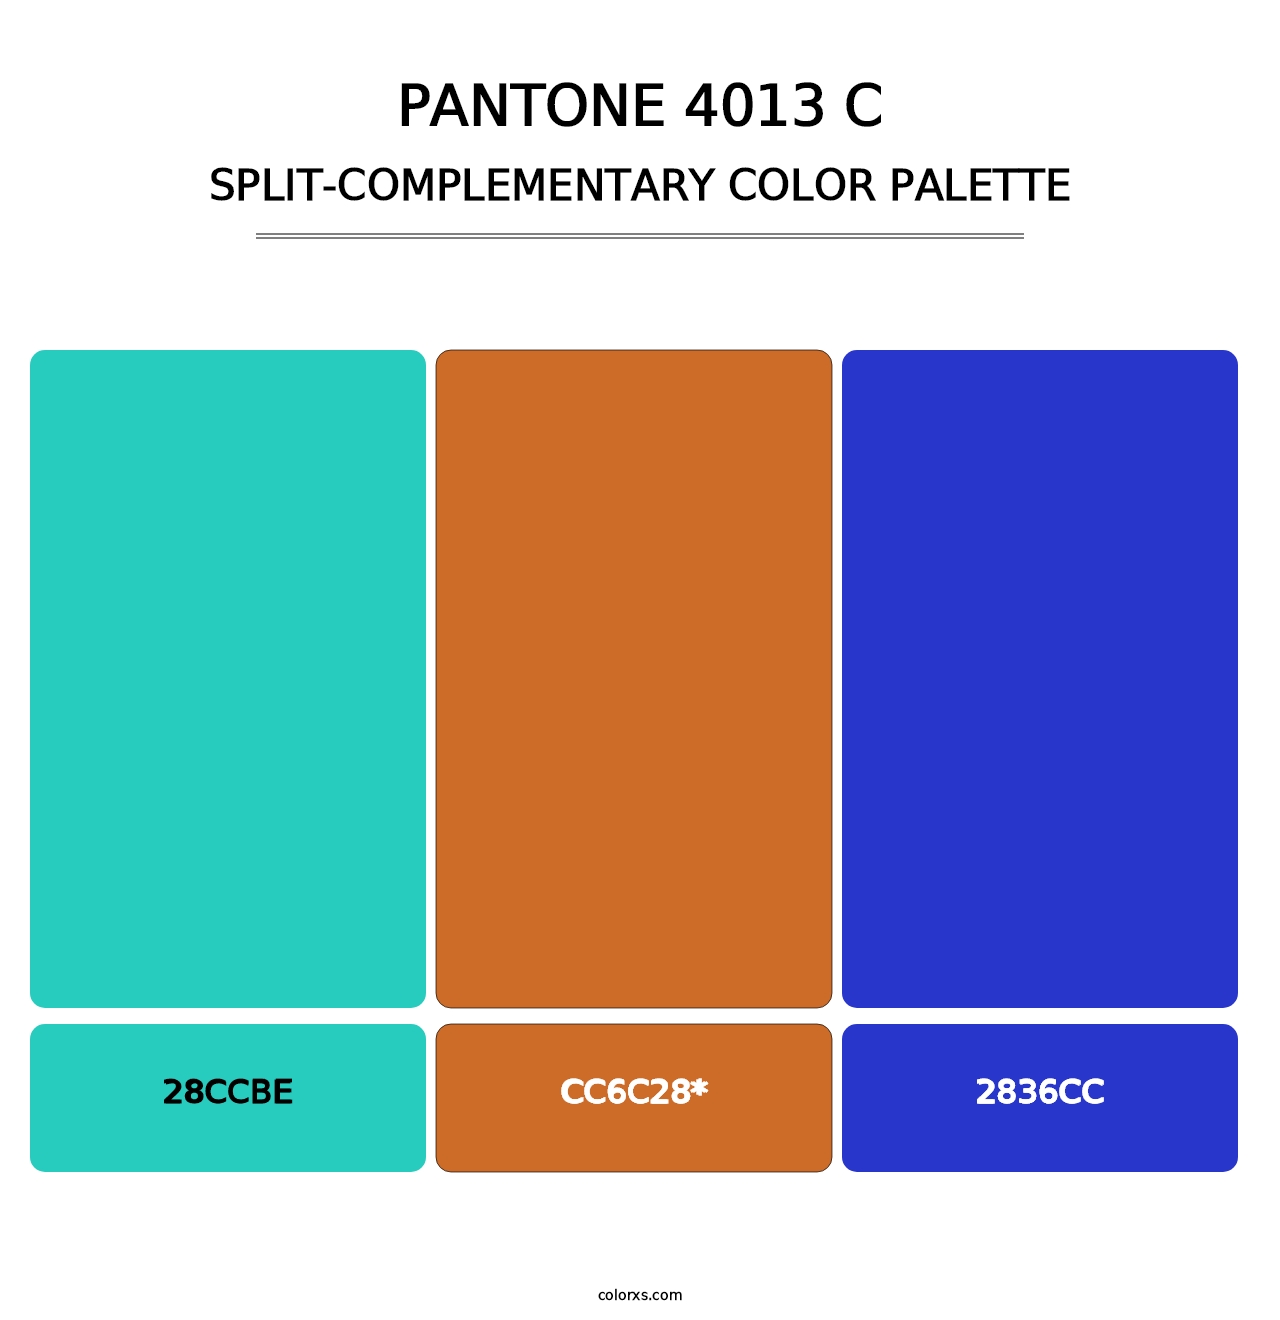 PANTONE 4013 C - Split-Complementary Color Palette